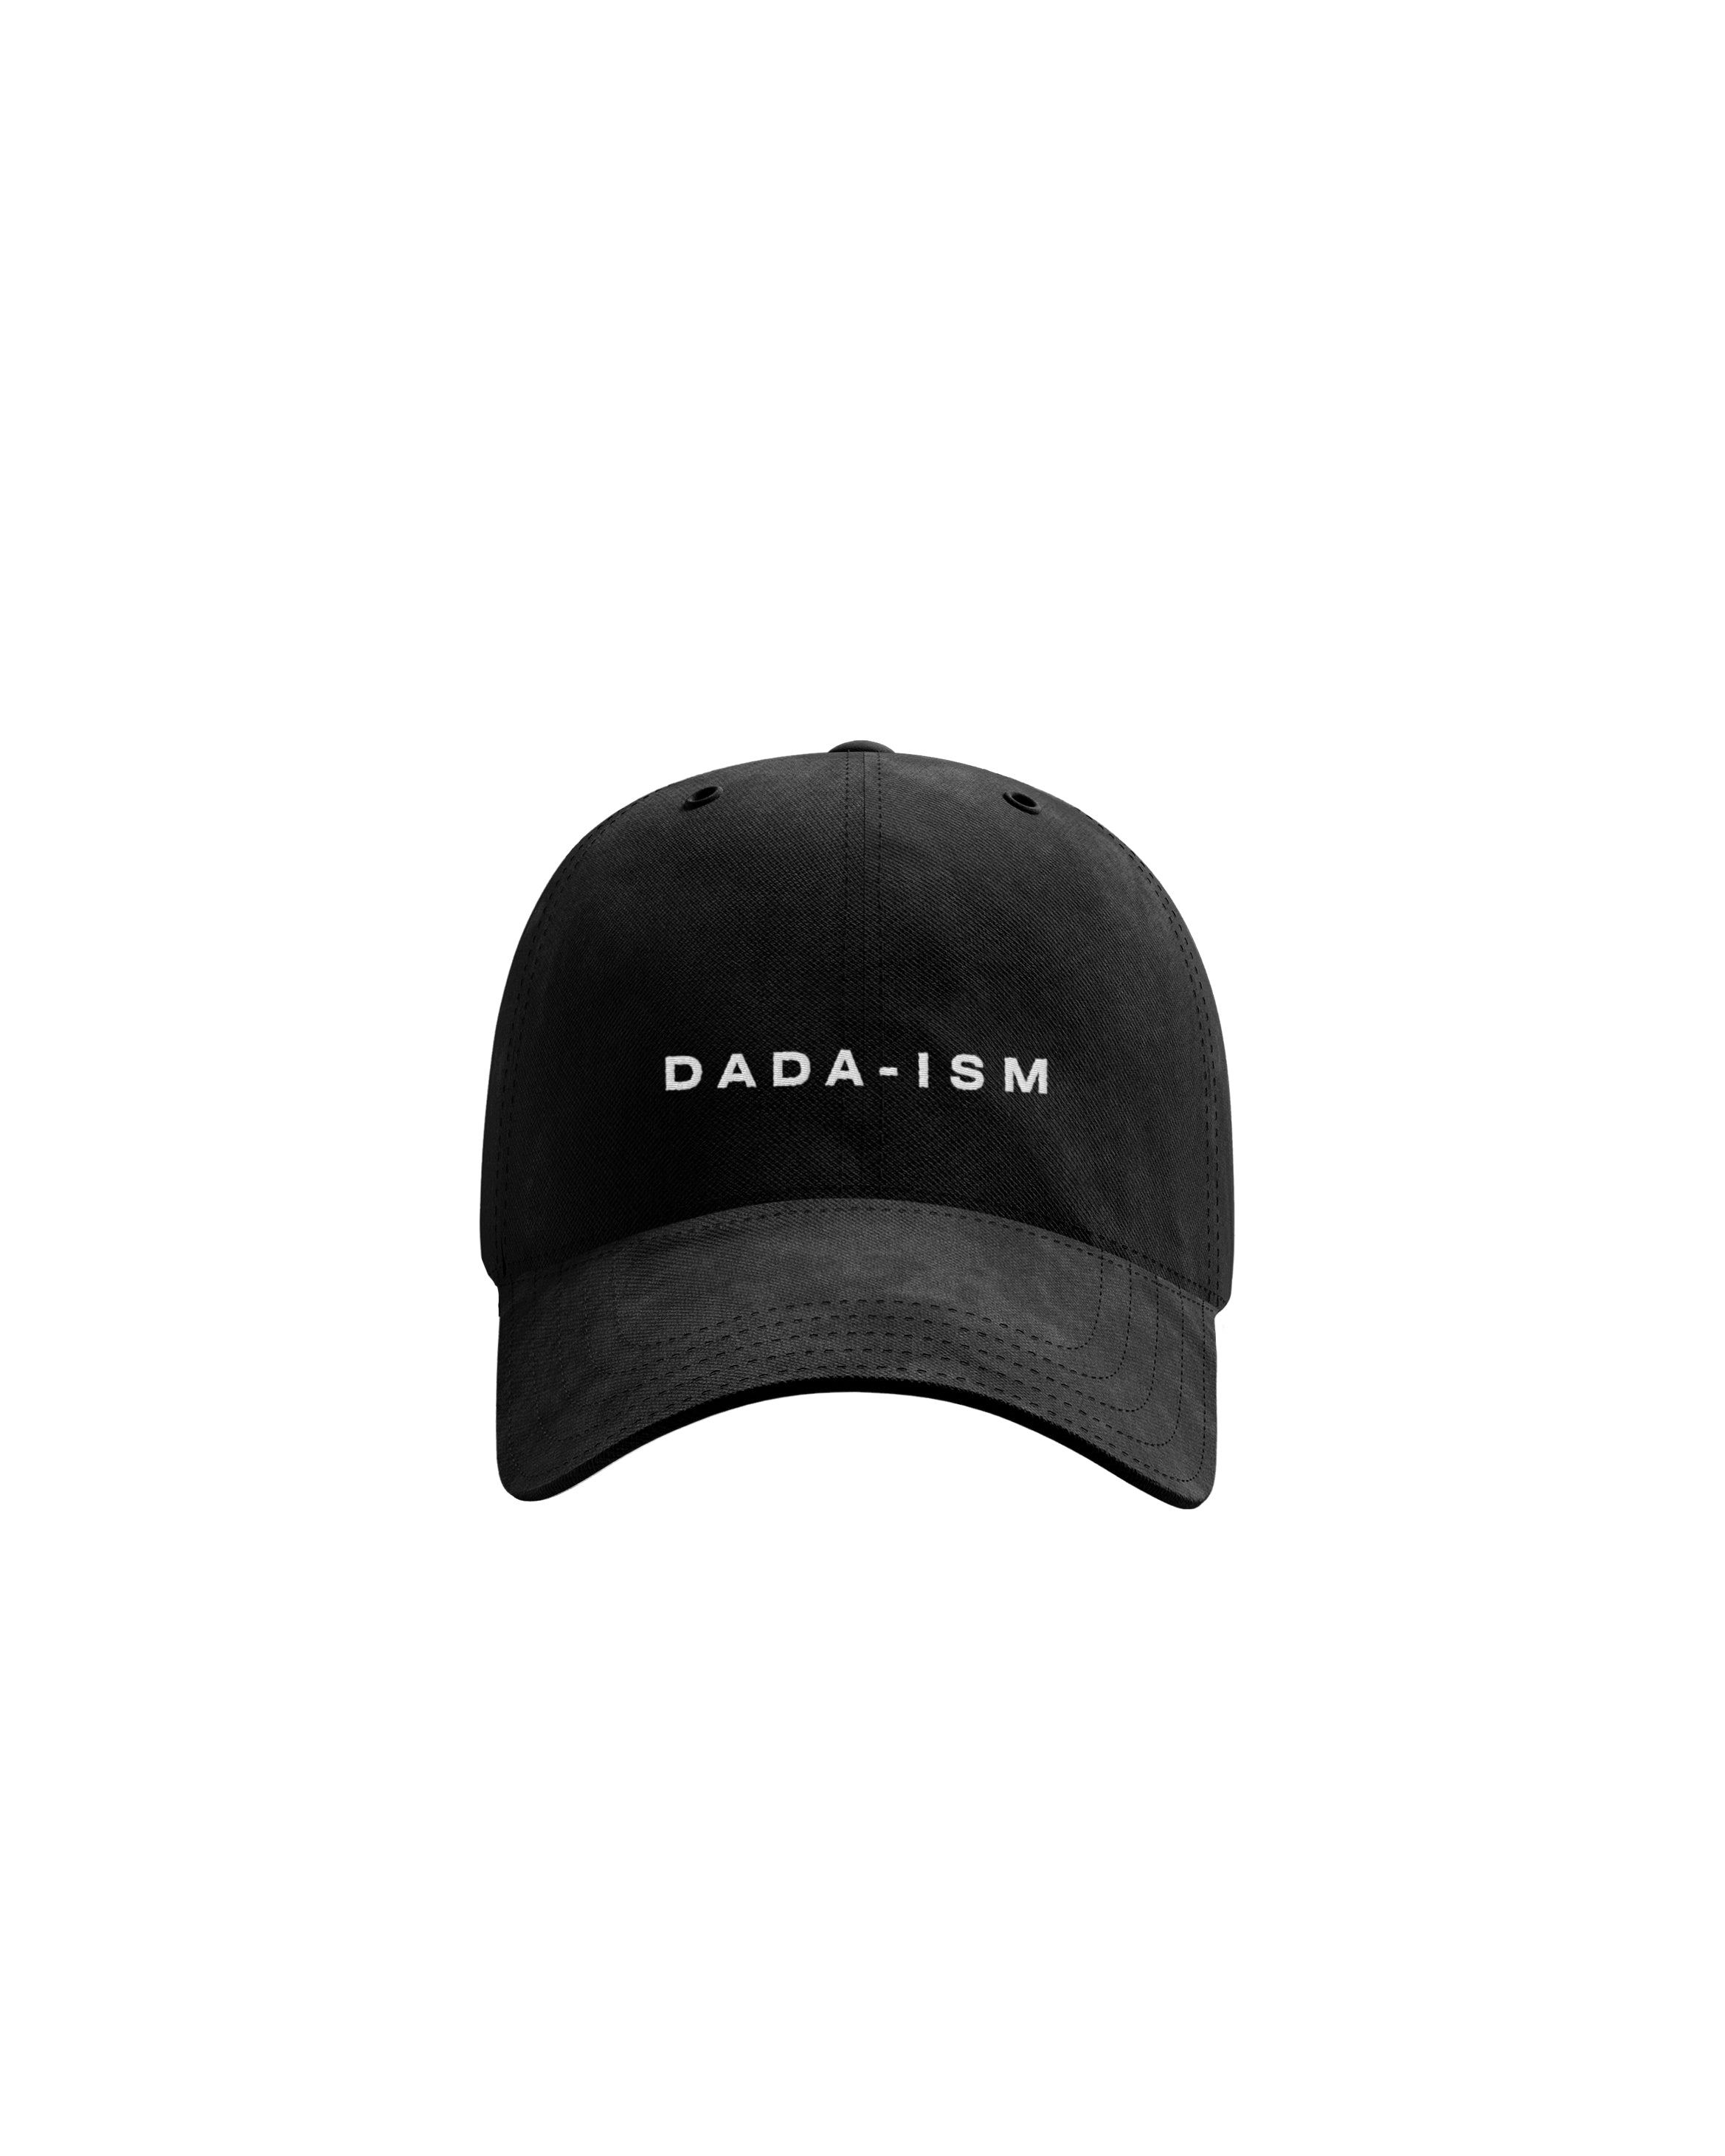 Dada-ism Dad Hat